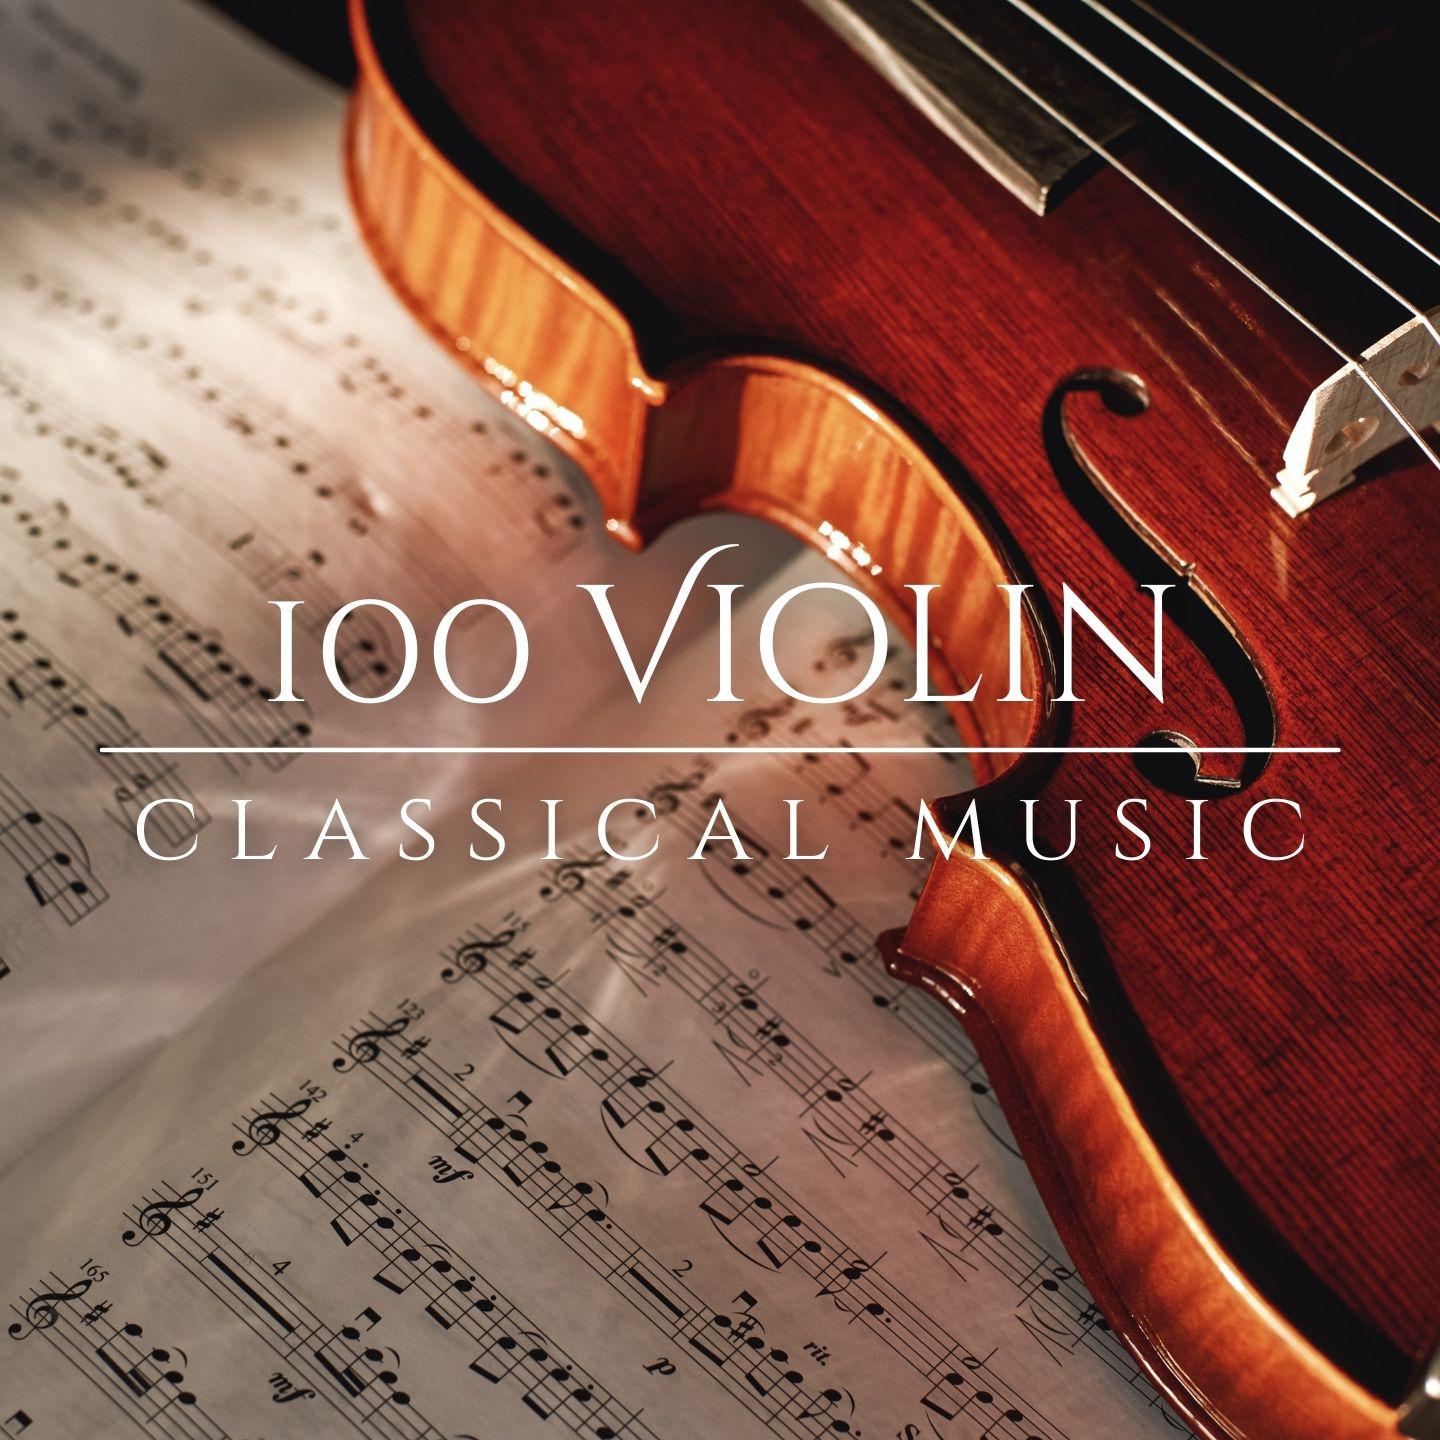 Orchestra da Camera Fiorentina - Violin Concerto No. 5 in A Major, K. 219:I. Allegro aperto